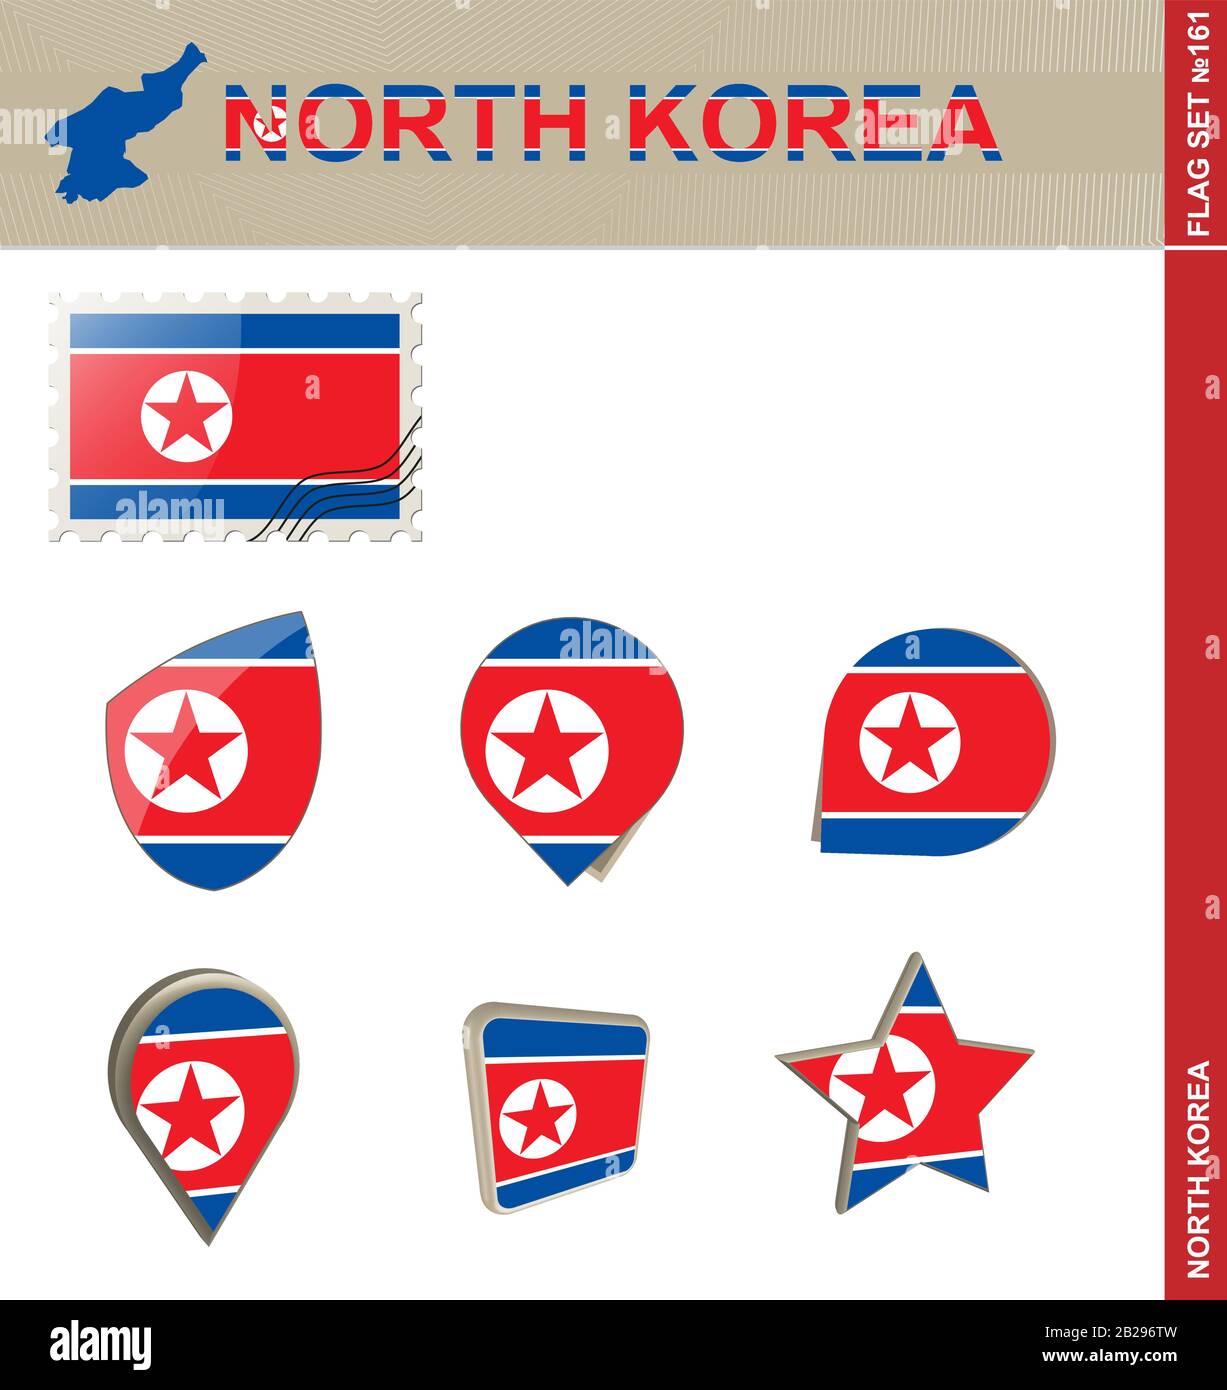 Ensemble De Drapeaux De La Corée Du Nord, Ensemble De Drapeaux #161. Vecteur. Illustration de Vecteur